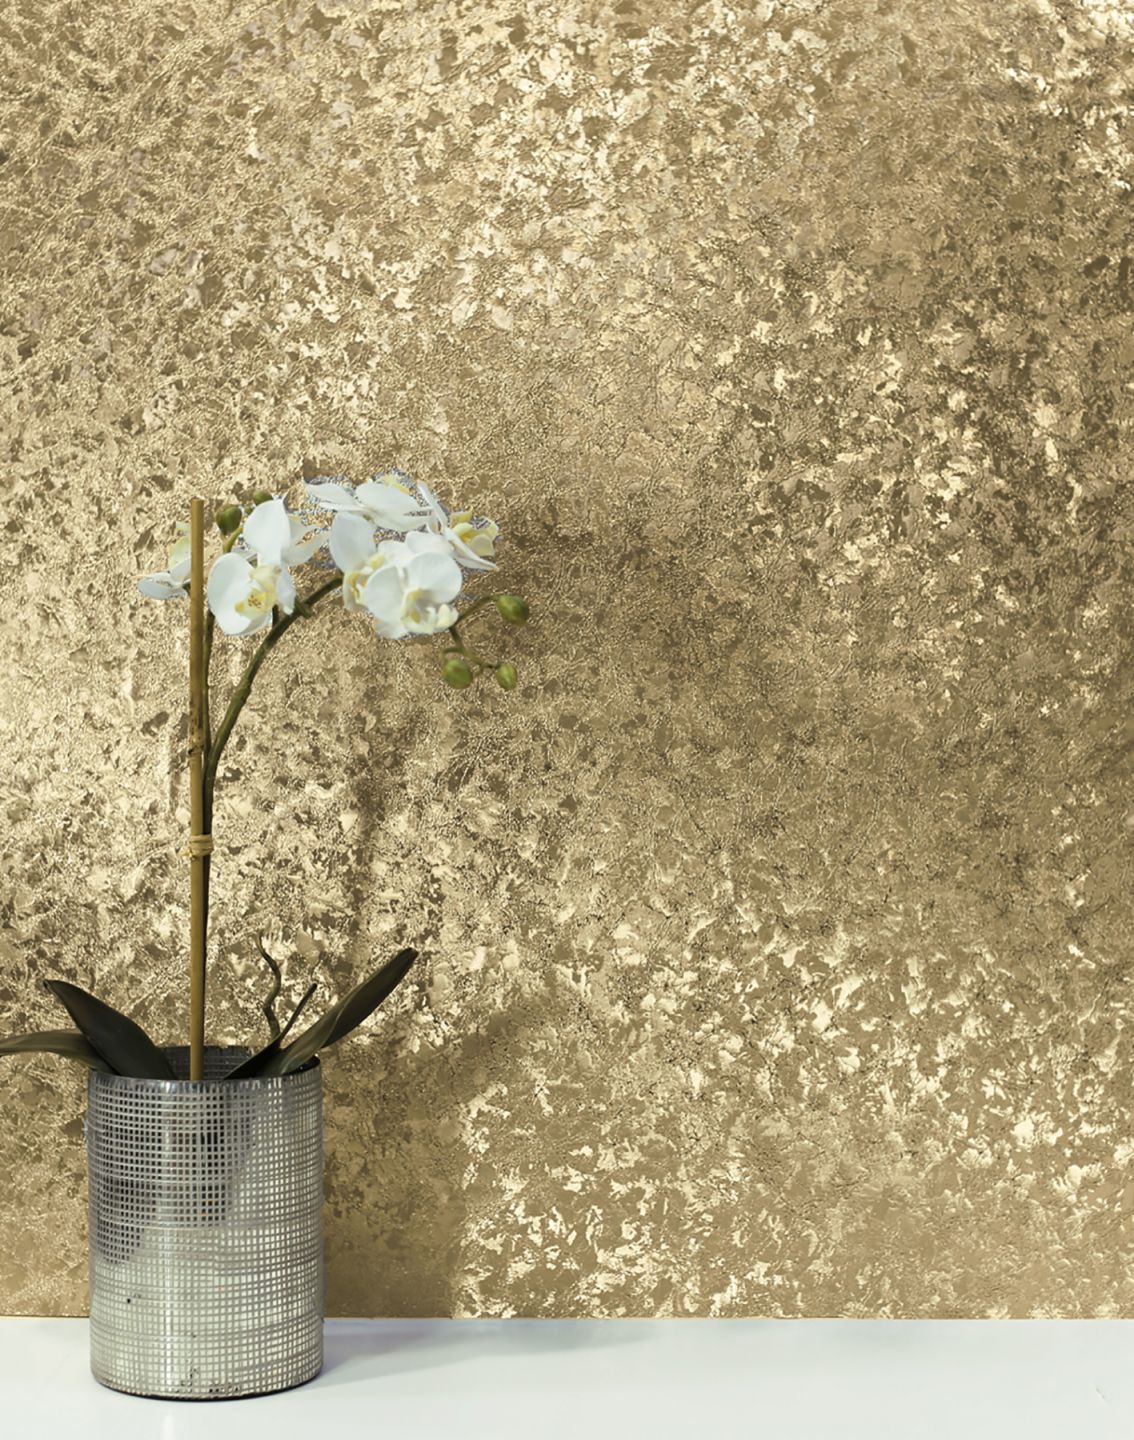 Una carta da parati in metallo color oro lucido sulla parete dietro un vaso con un'orchidea bianca